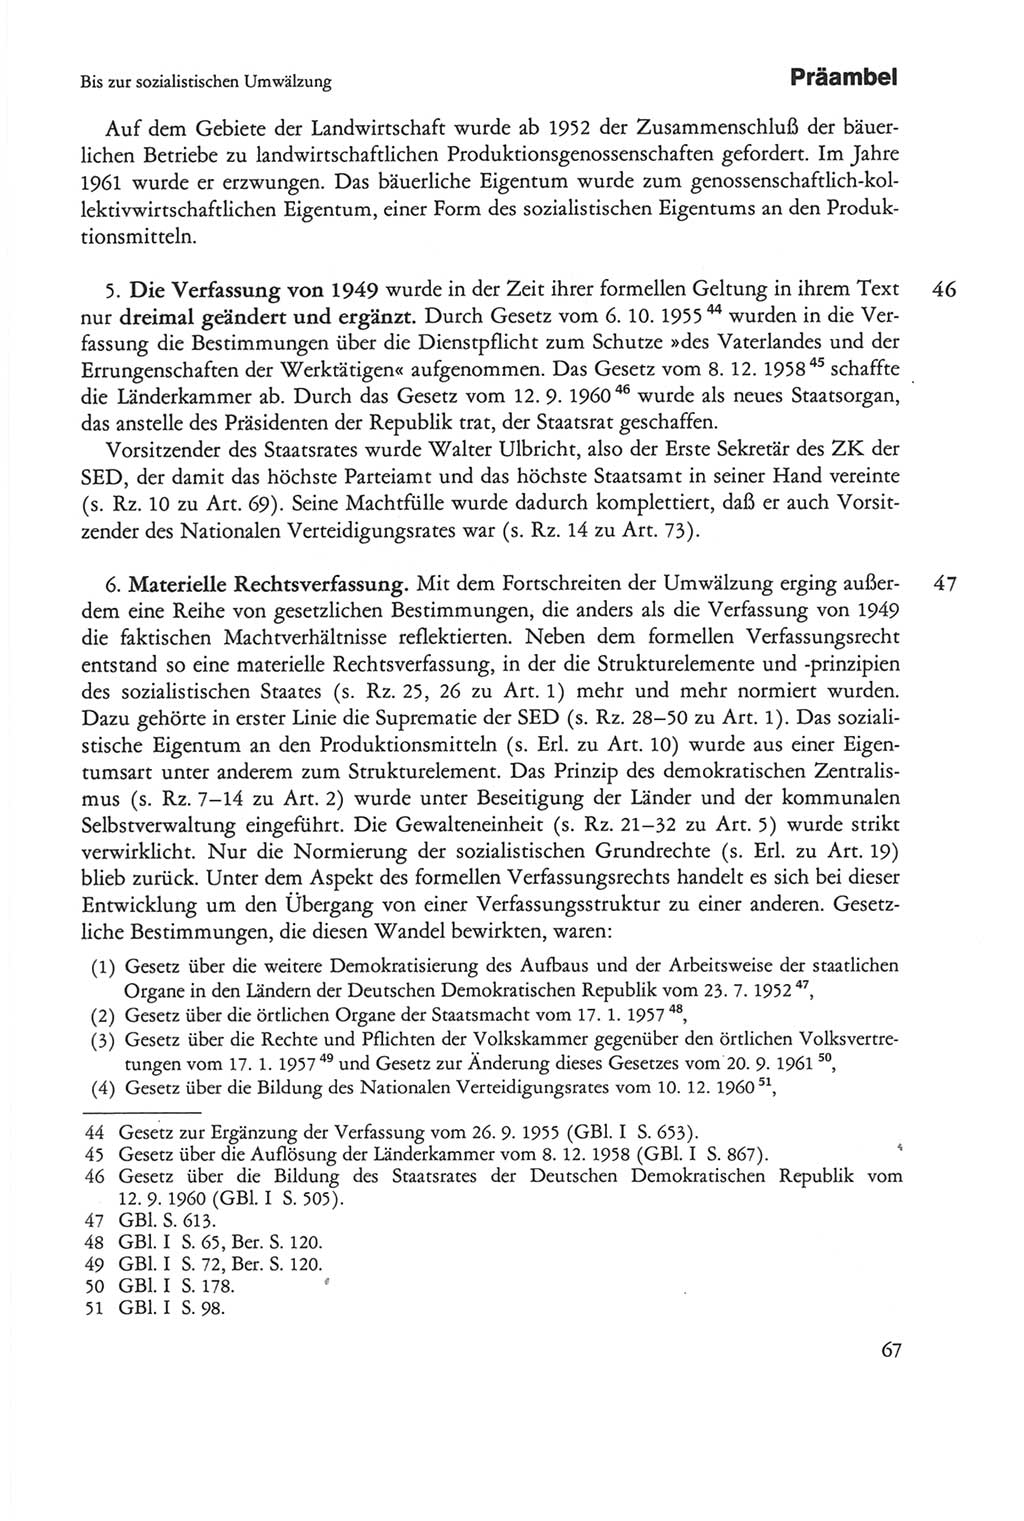 Die sozialistische Verfassung der Deutschen Demokratischen Republik (DDR), Kommentar 1982, Seite 67 (Soz. Verf. DDR Komm. 1982, S. 67)